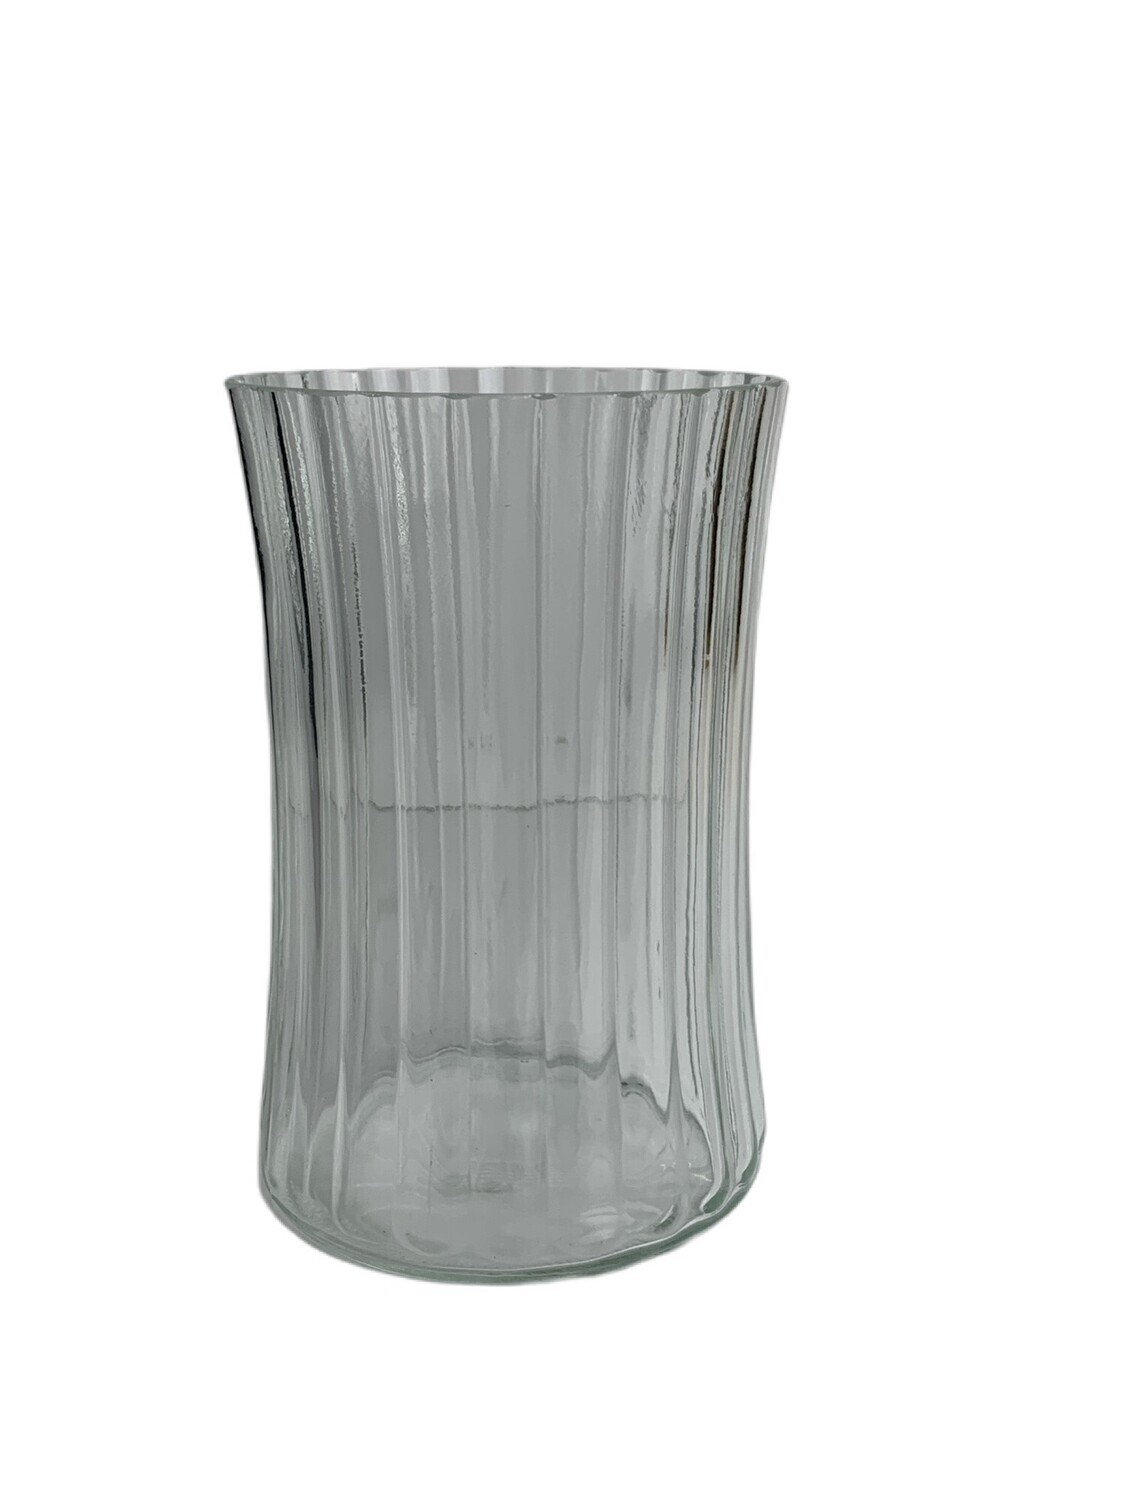 Phoenix Handtie Vase